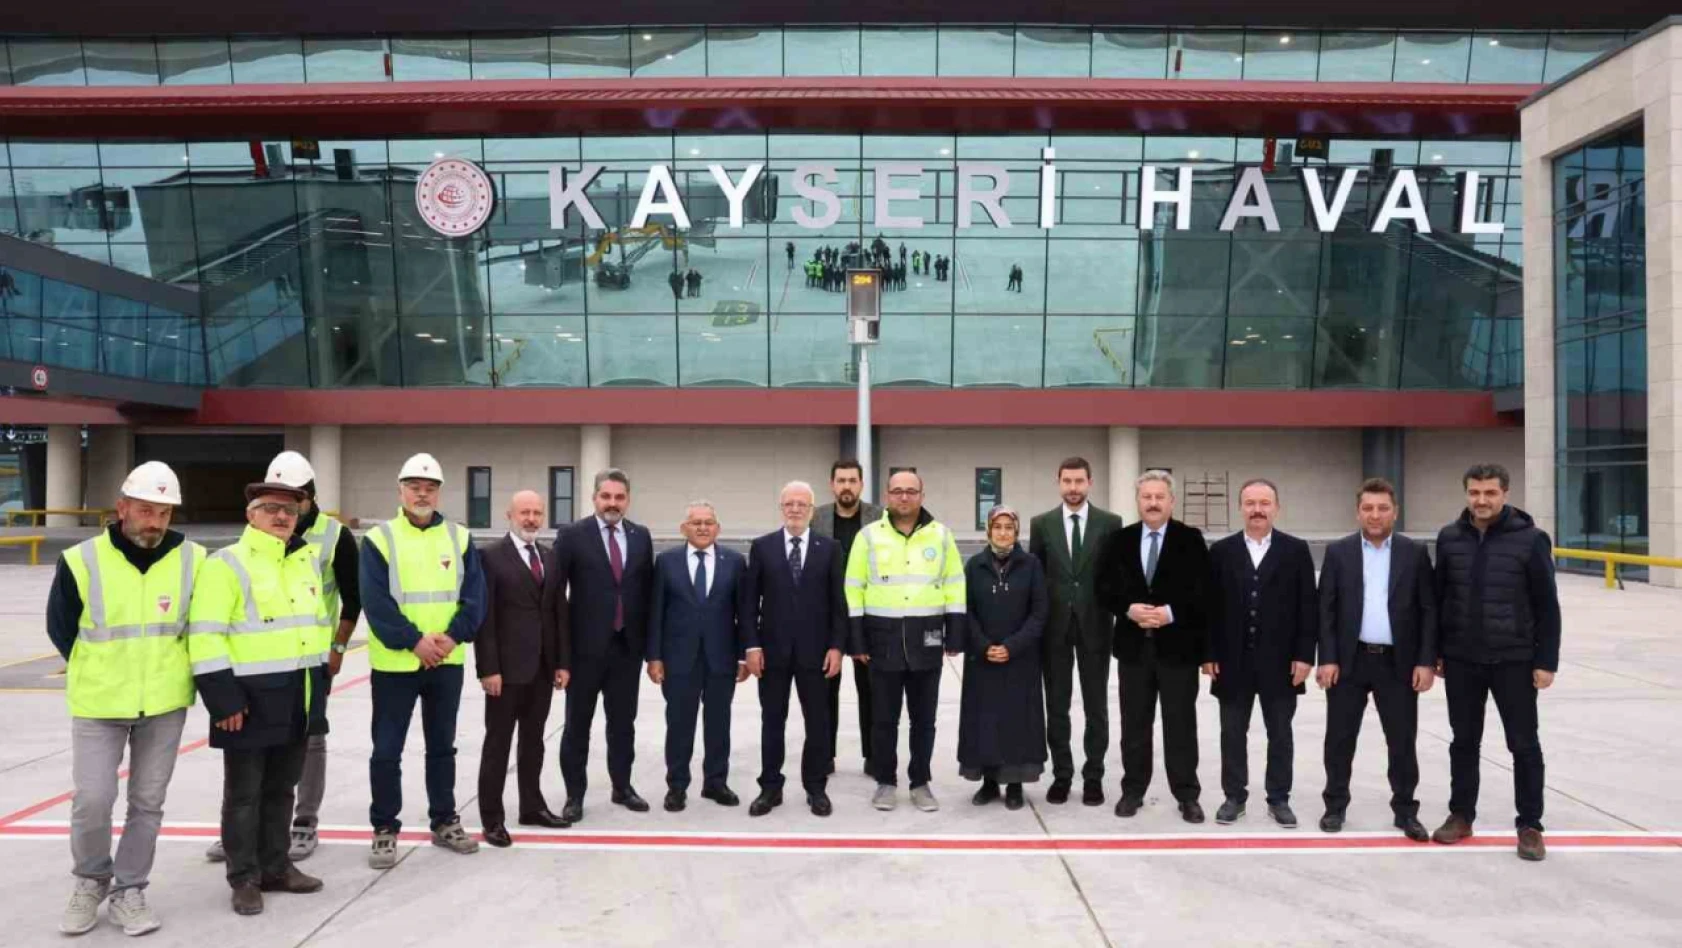 Kayseri'nin yeni terminal binasında konuşan Elitaş'tan 'hızlı tren' açıklaması